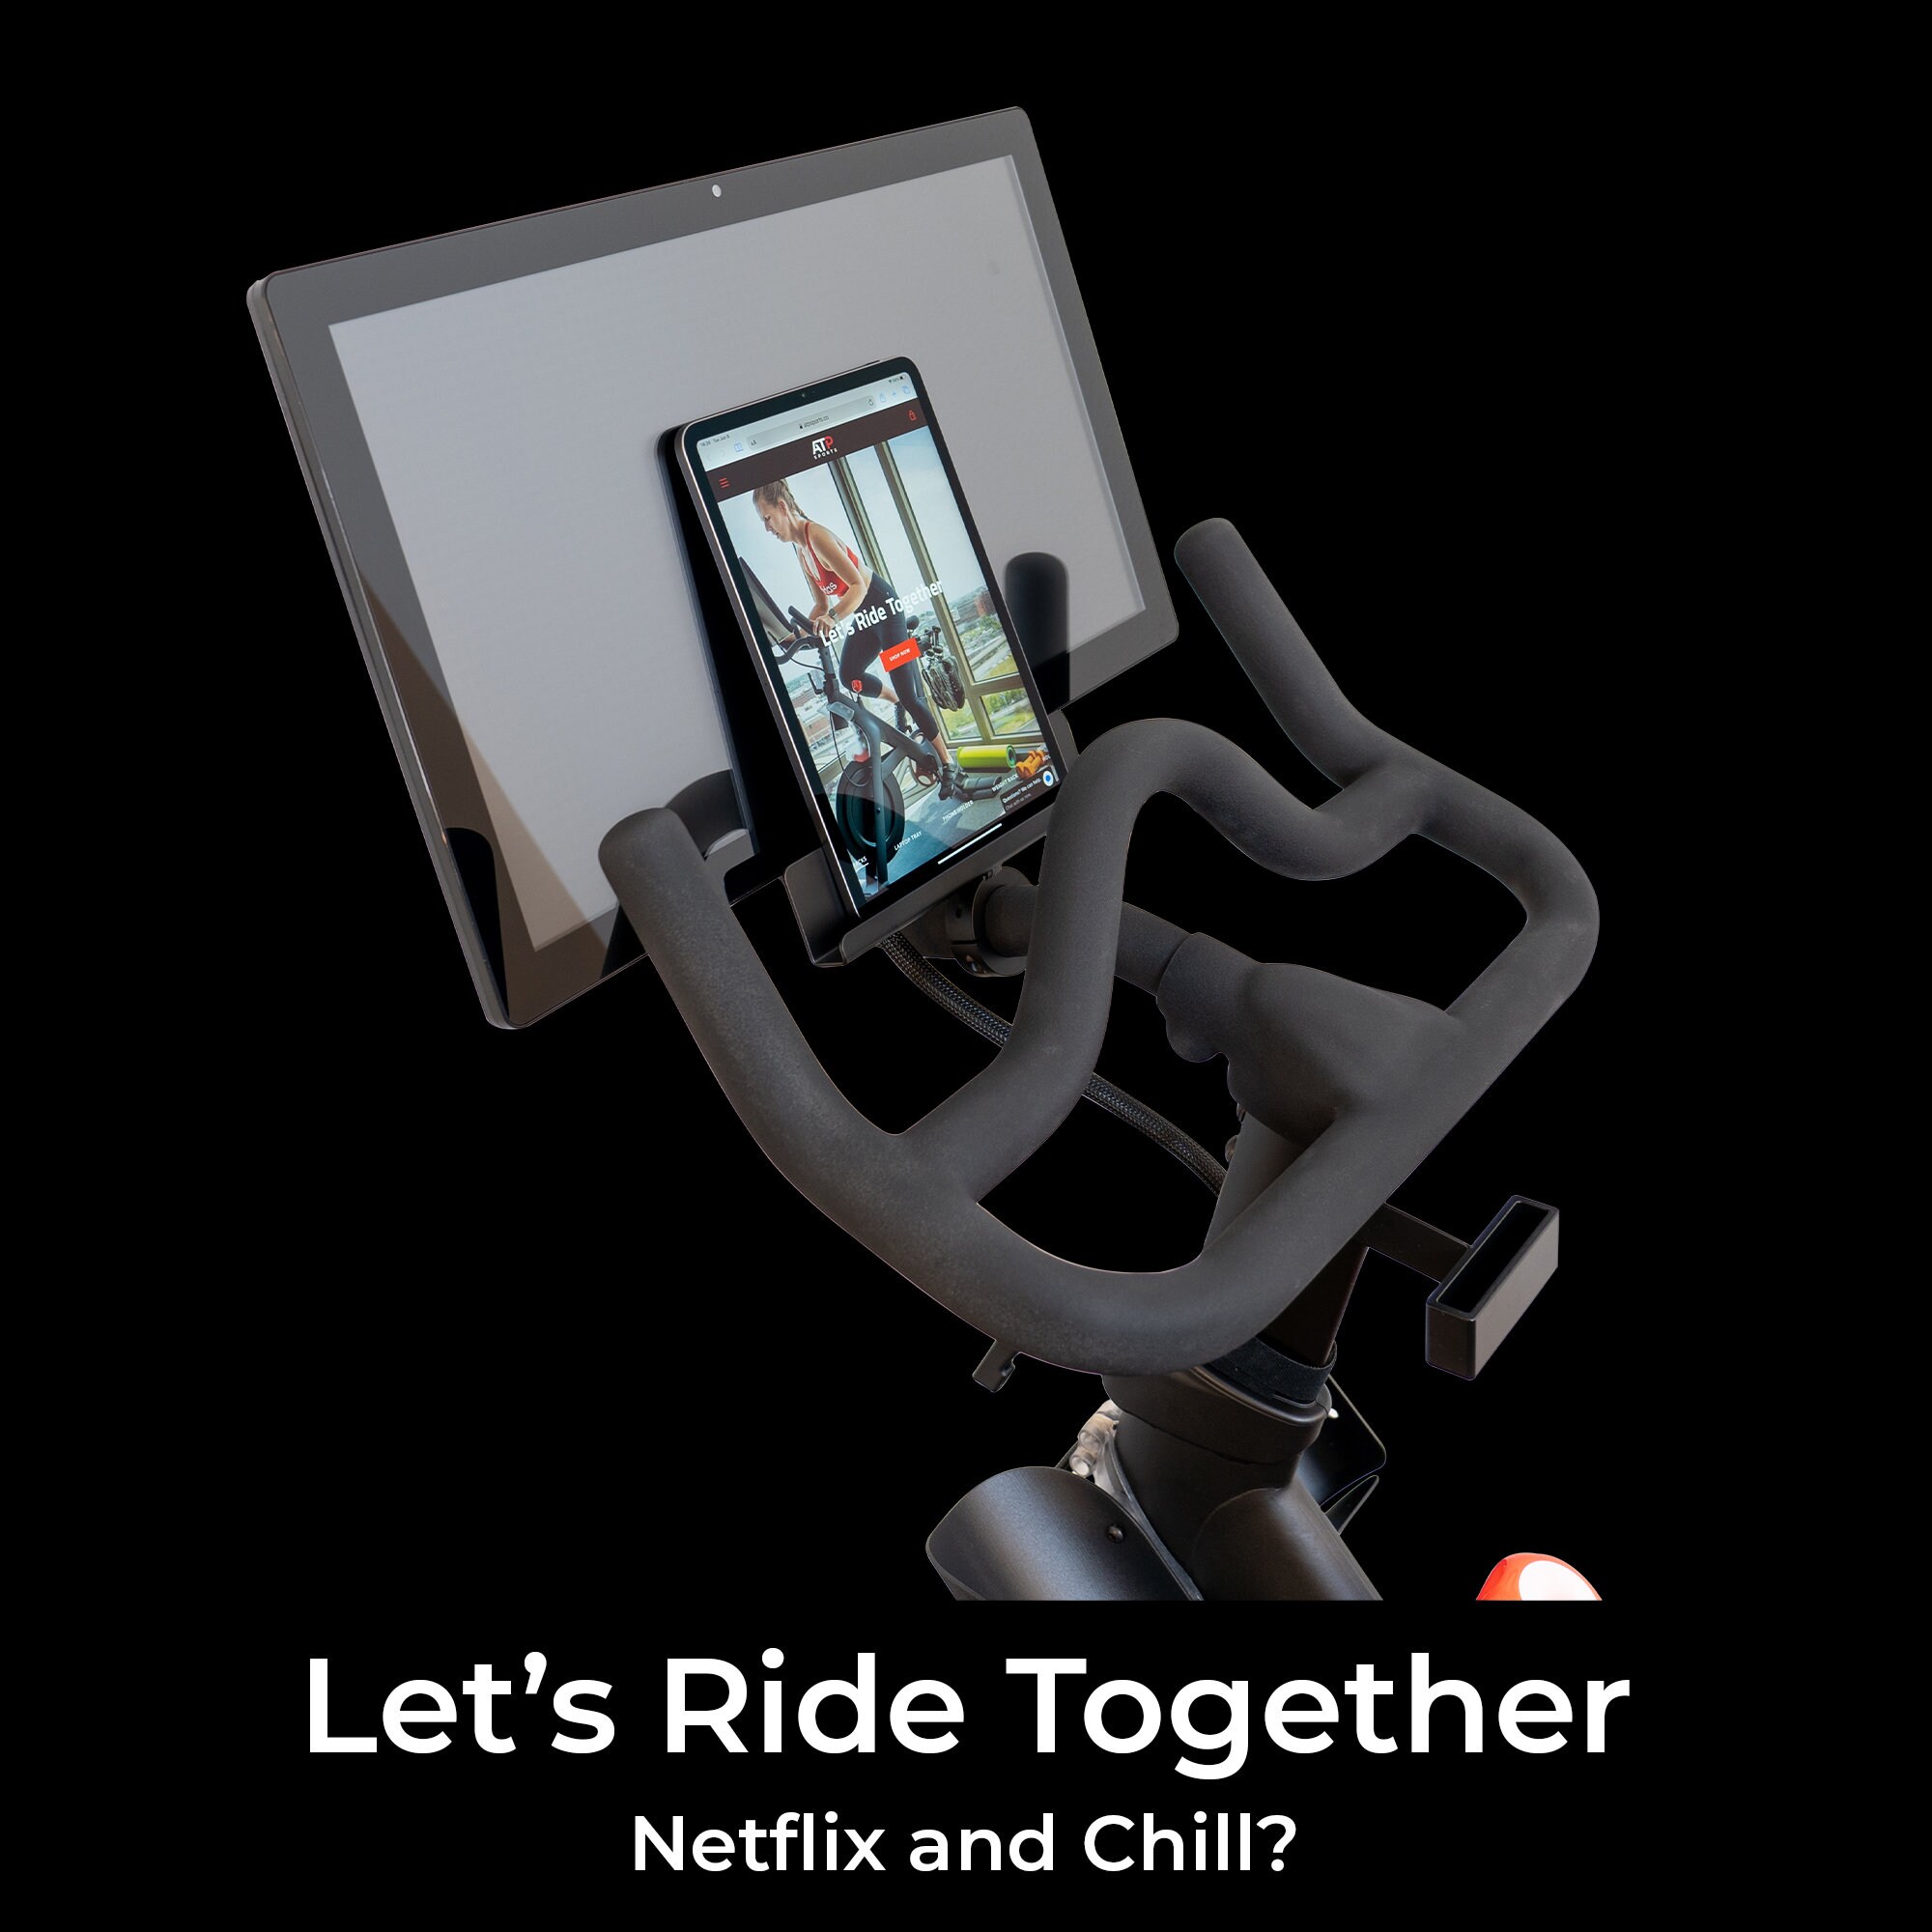 Support iPad pour Vélo d'appartement Support pour tablette